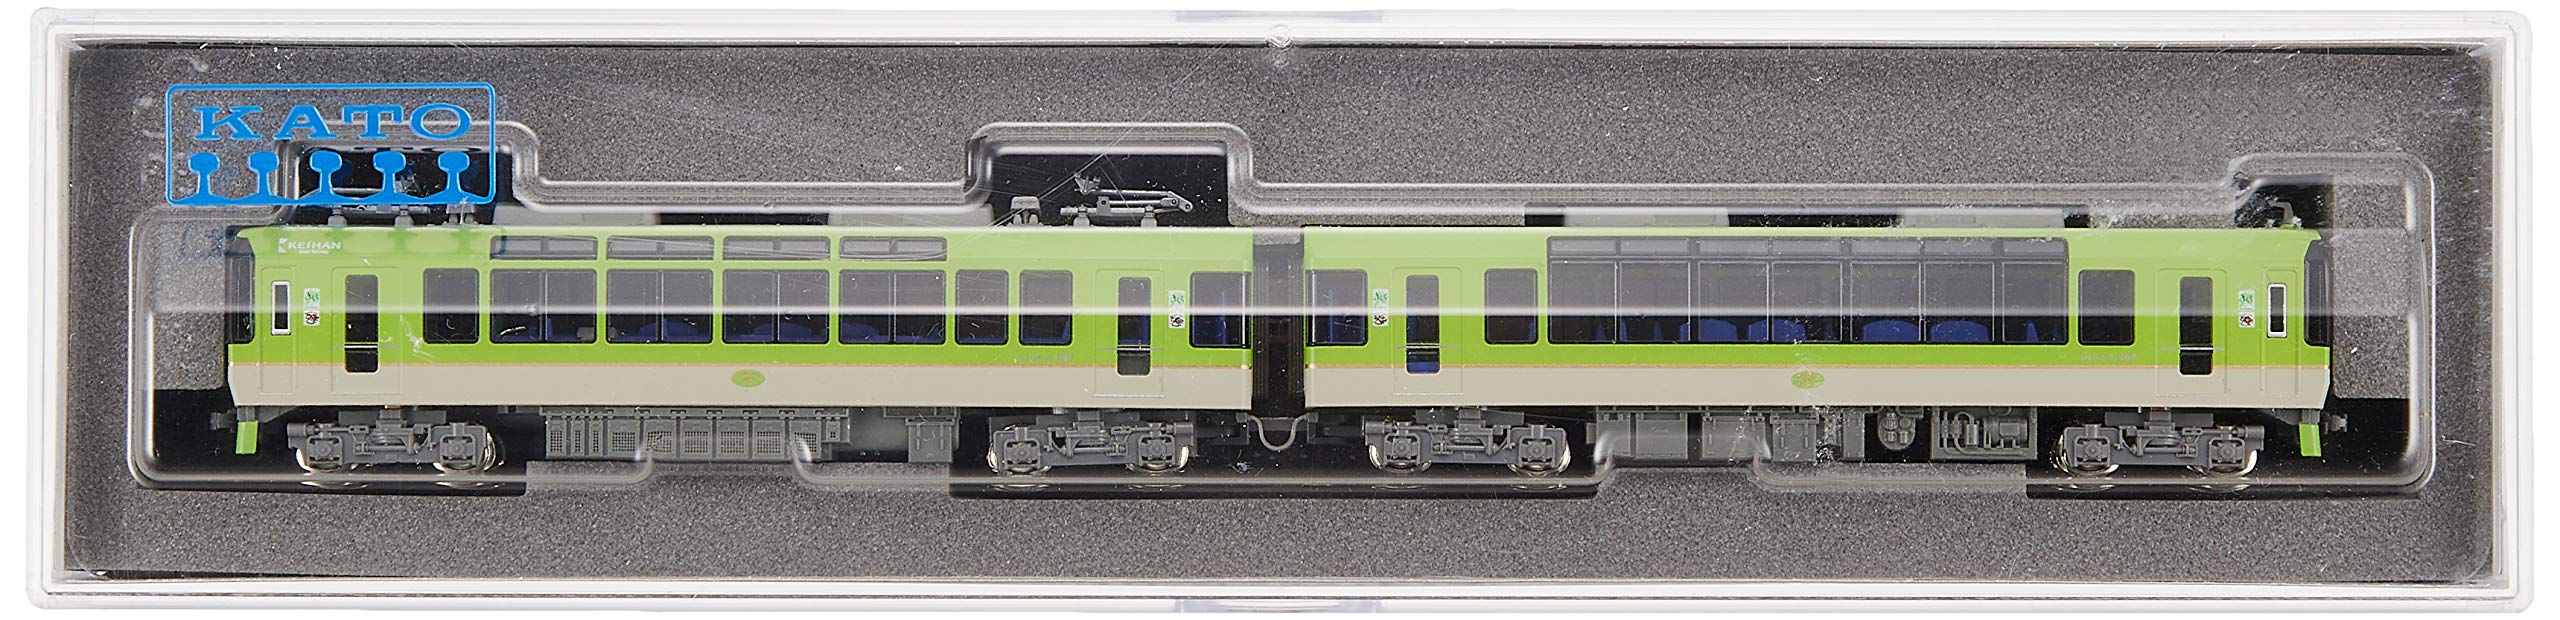 Train miniature électrique Eizan Kato N Gauge série 900 - Bleu érable vert